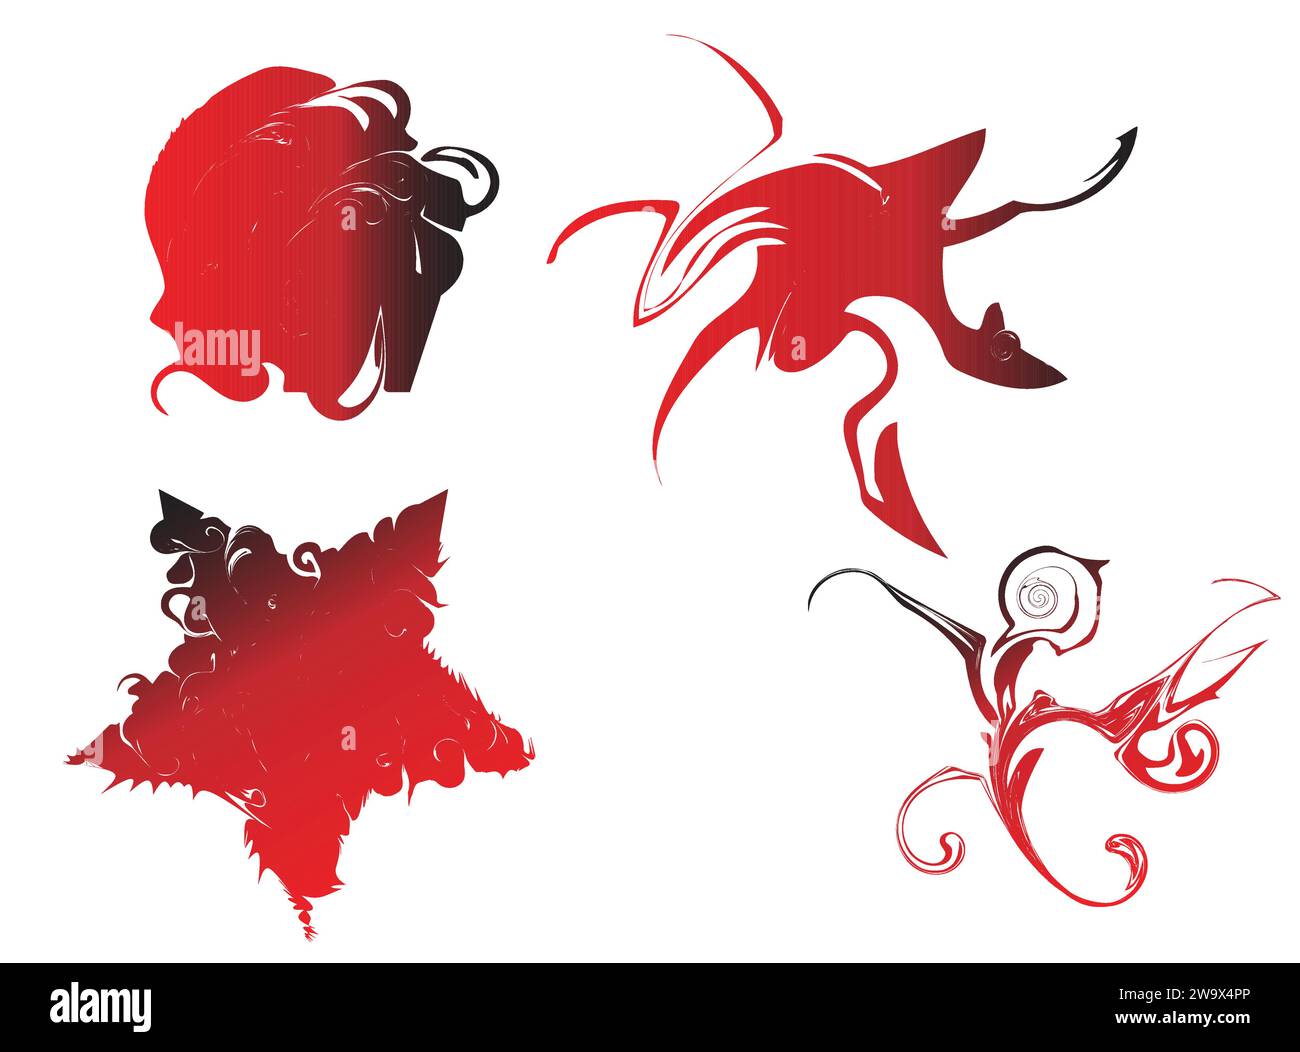 animale mistico, bufalo rosso, stella marina, pollo e uccello Illustrazione Vettoriale